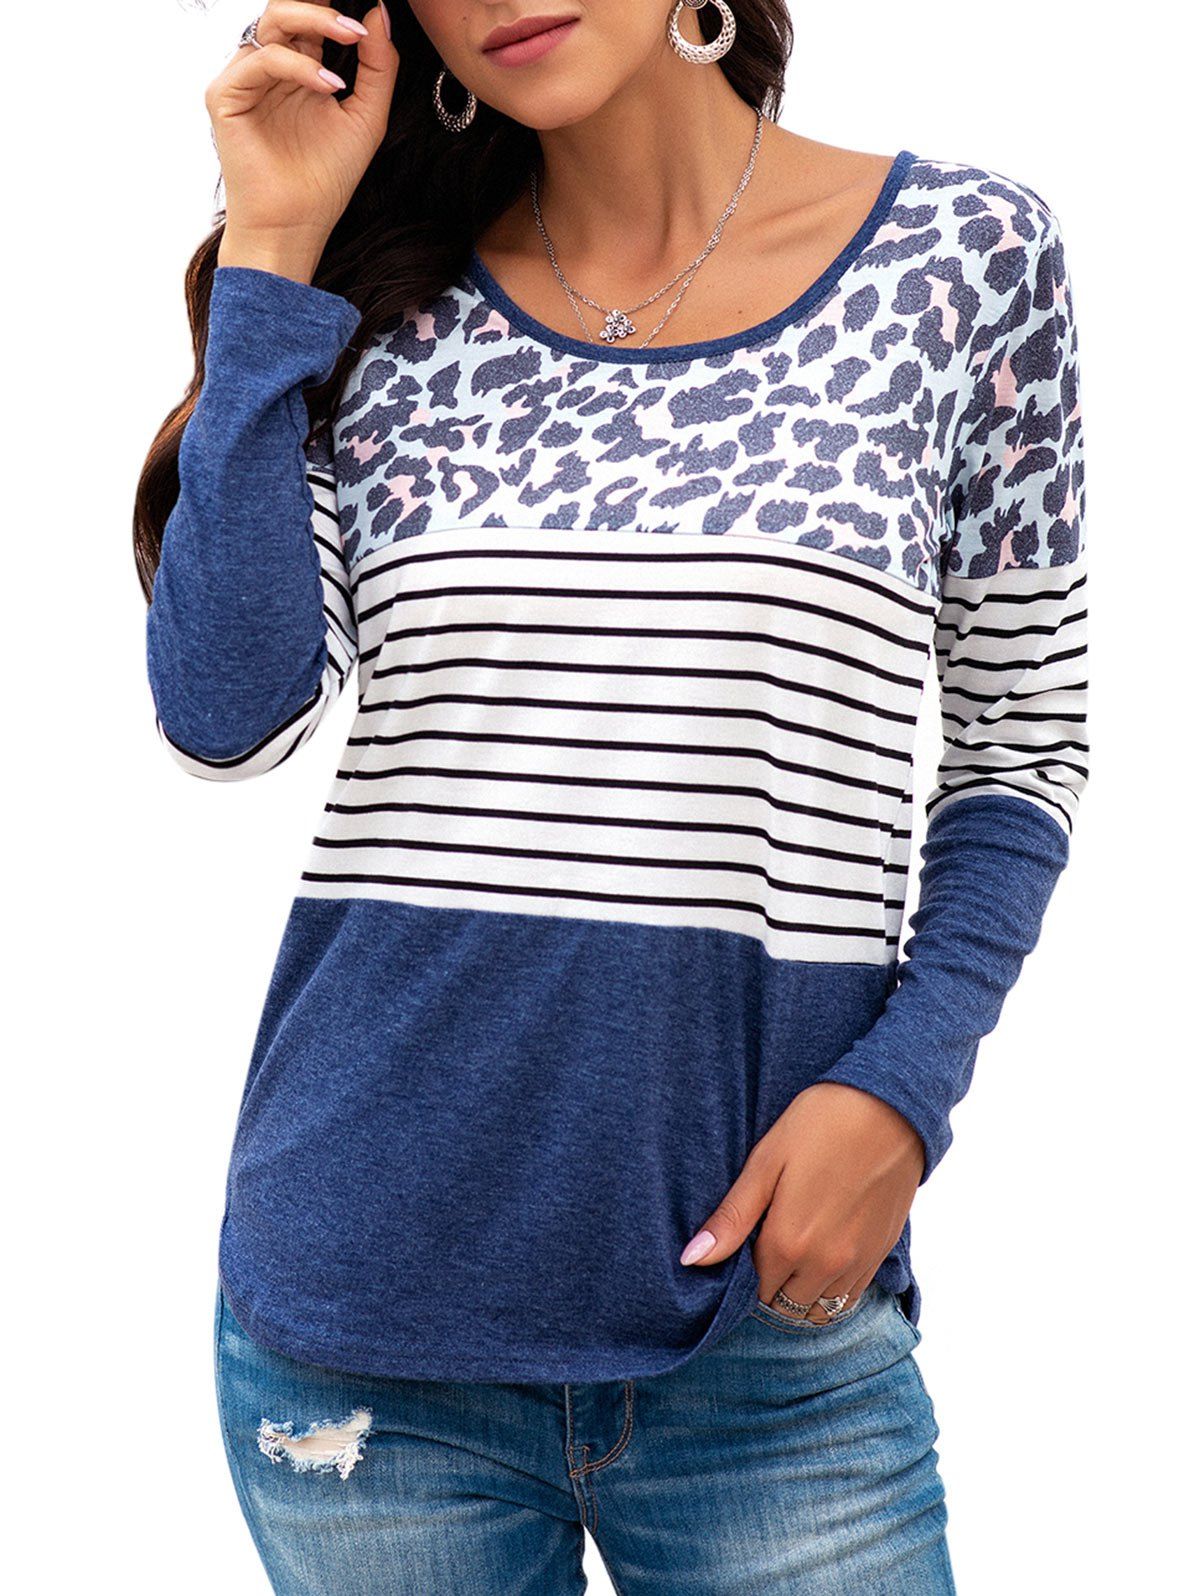 Leopard Striped Long Sleeve T-shirt - DEEP BLUE S